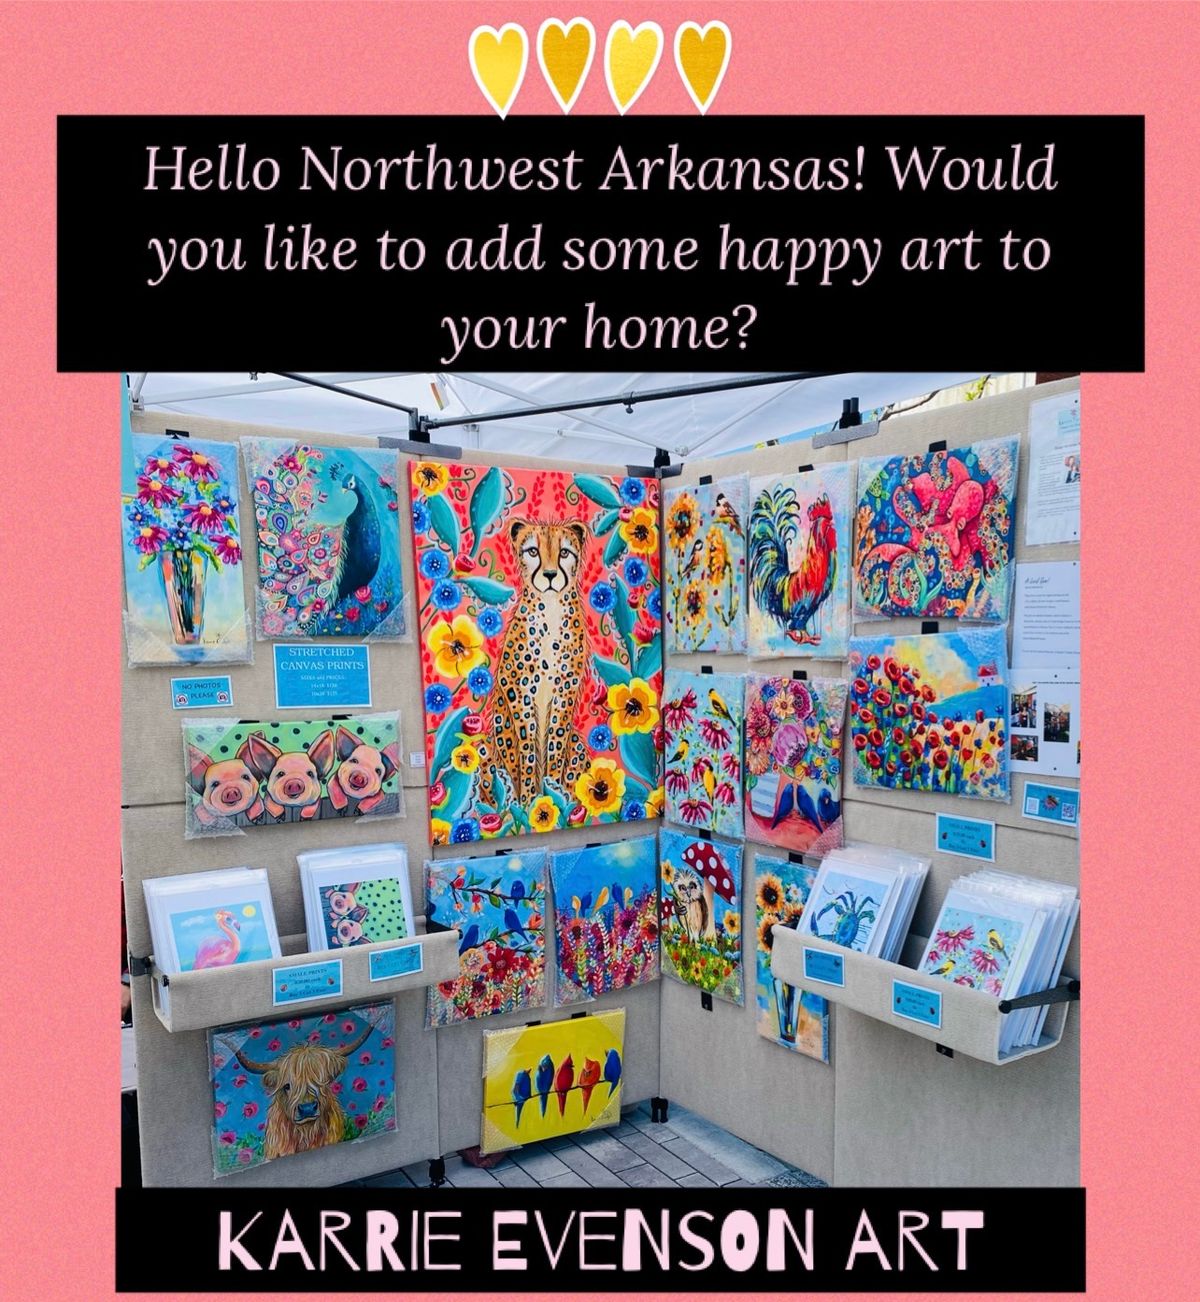 Karrie Evenson at Art Market in Bentonville! 